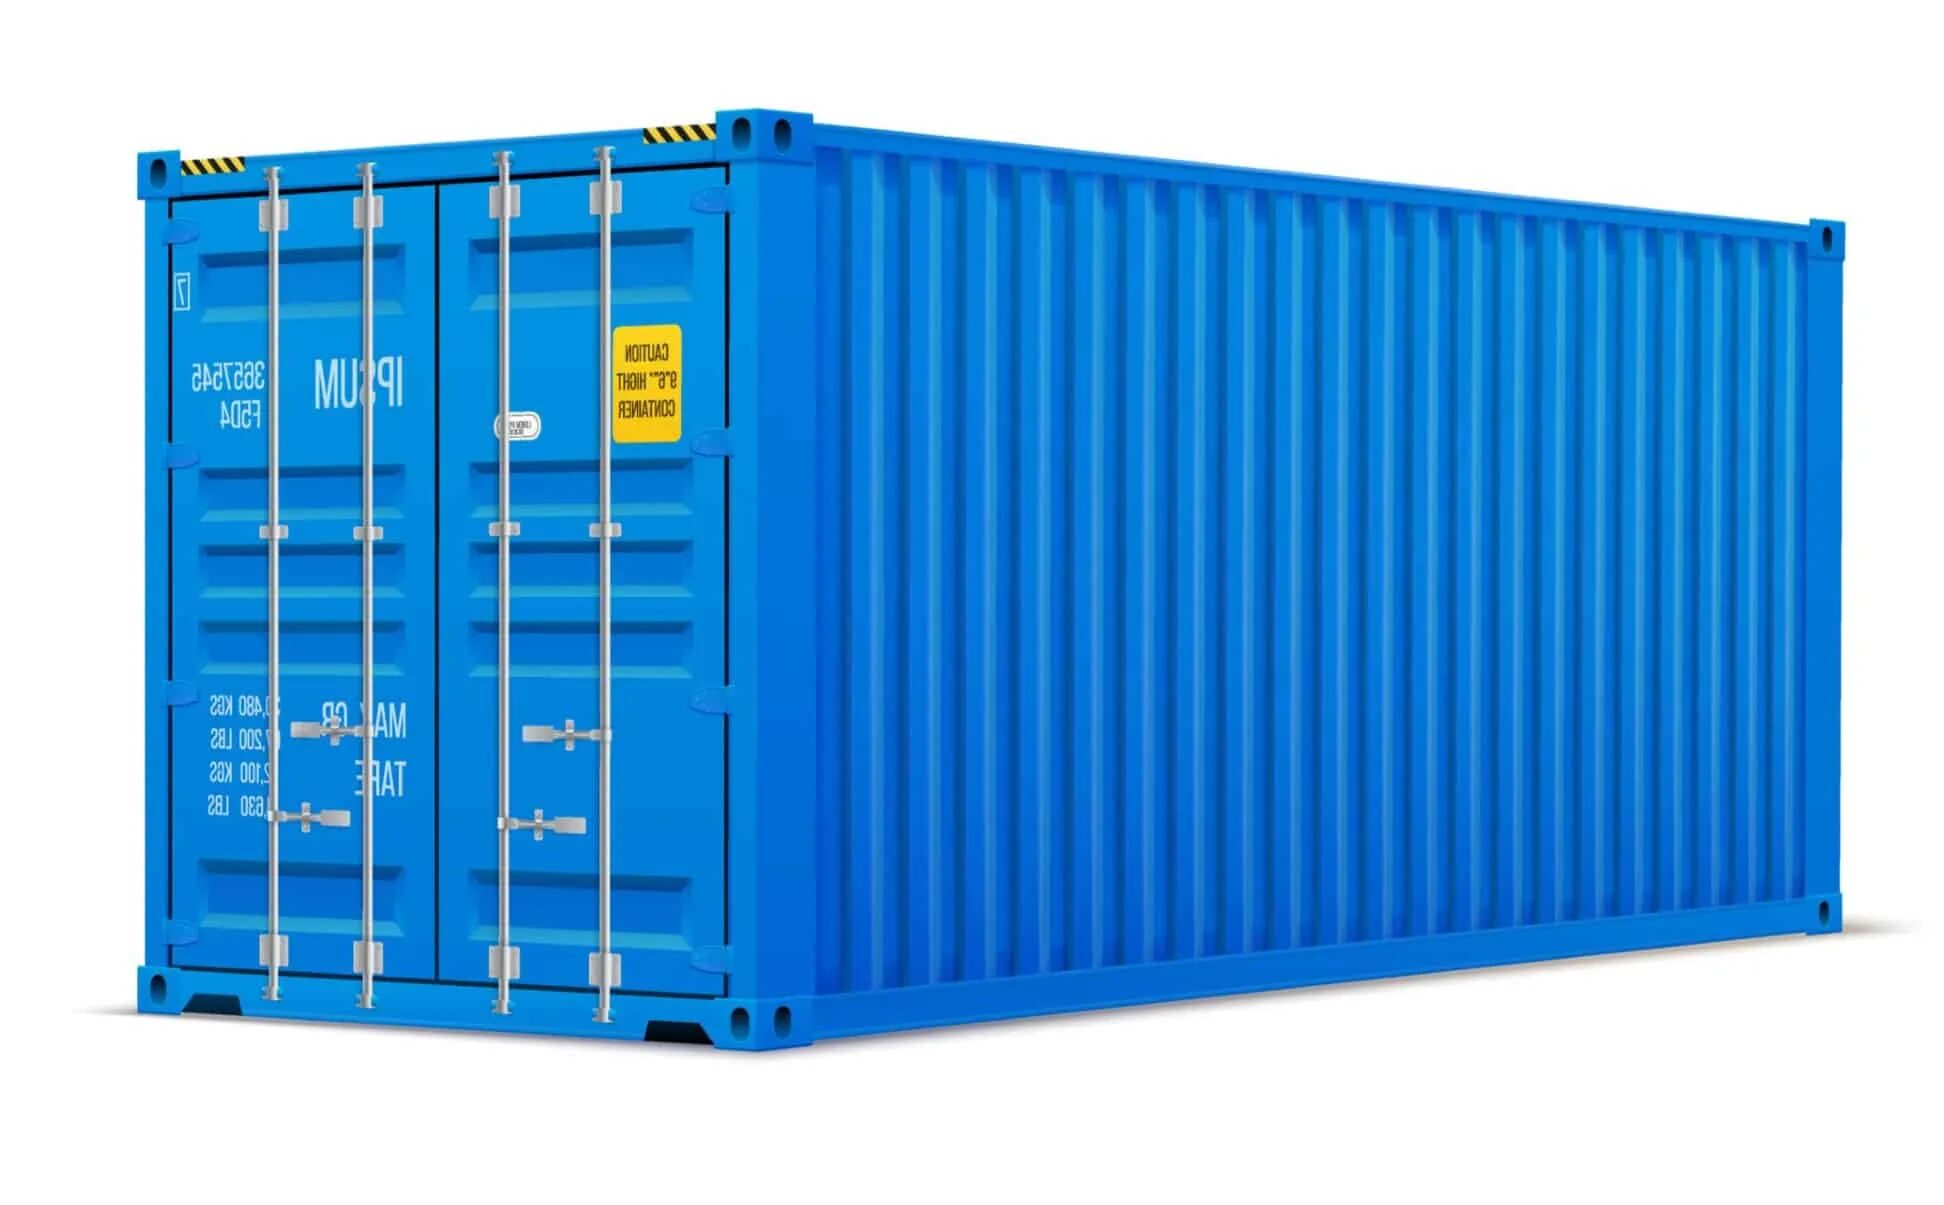 Контейнер 20dc новый. 40-Ка футовый High Cube контейнер увеличенной вместимости. Морской контейнер 40 футов HC, DC. Контейнер 20dc hlxu3340109. Контейнеры морские железнодорожные